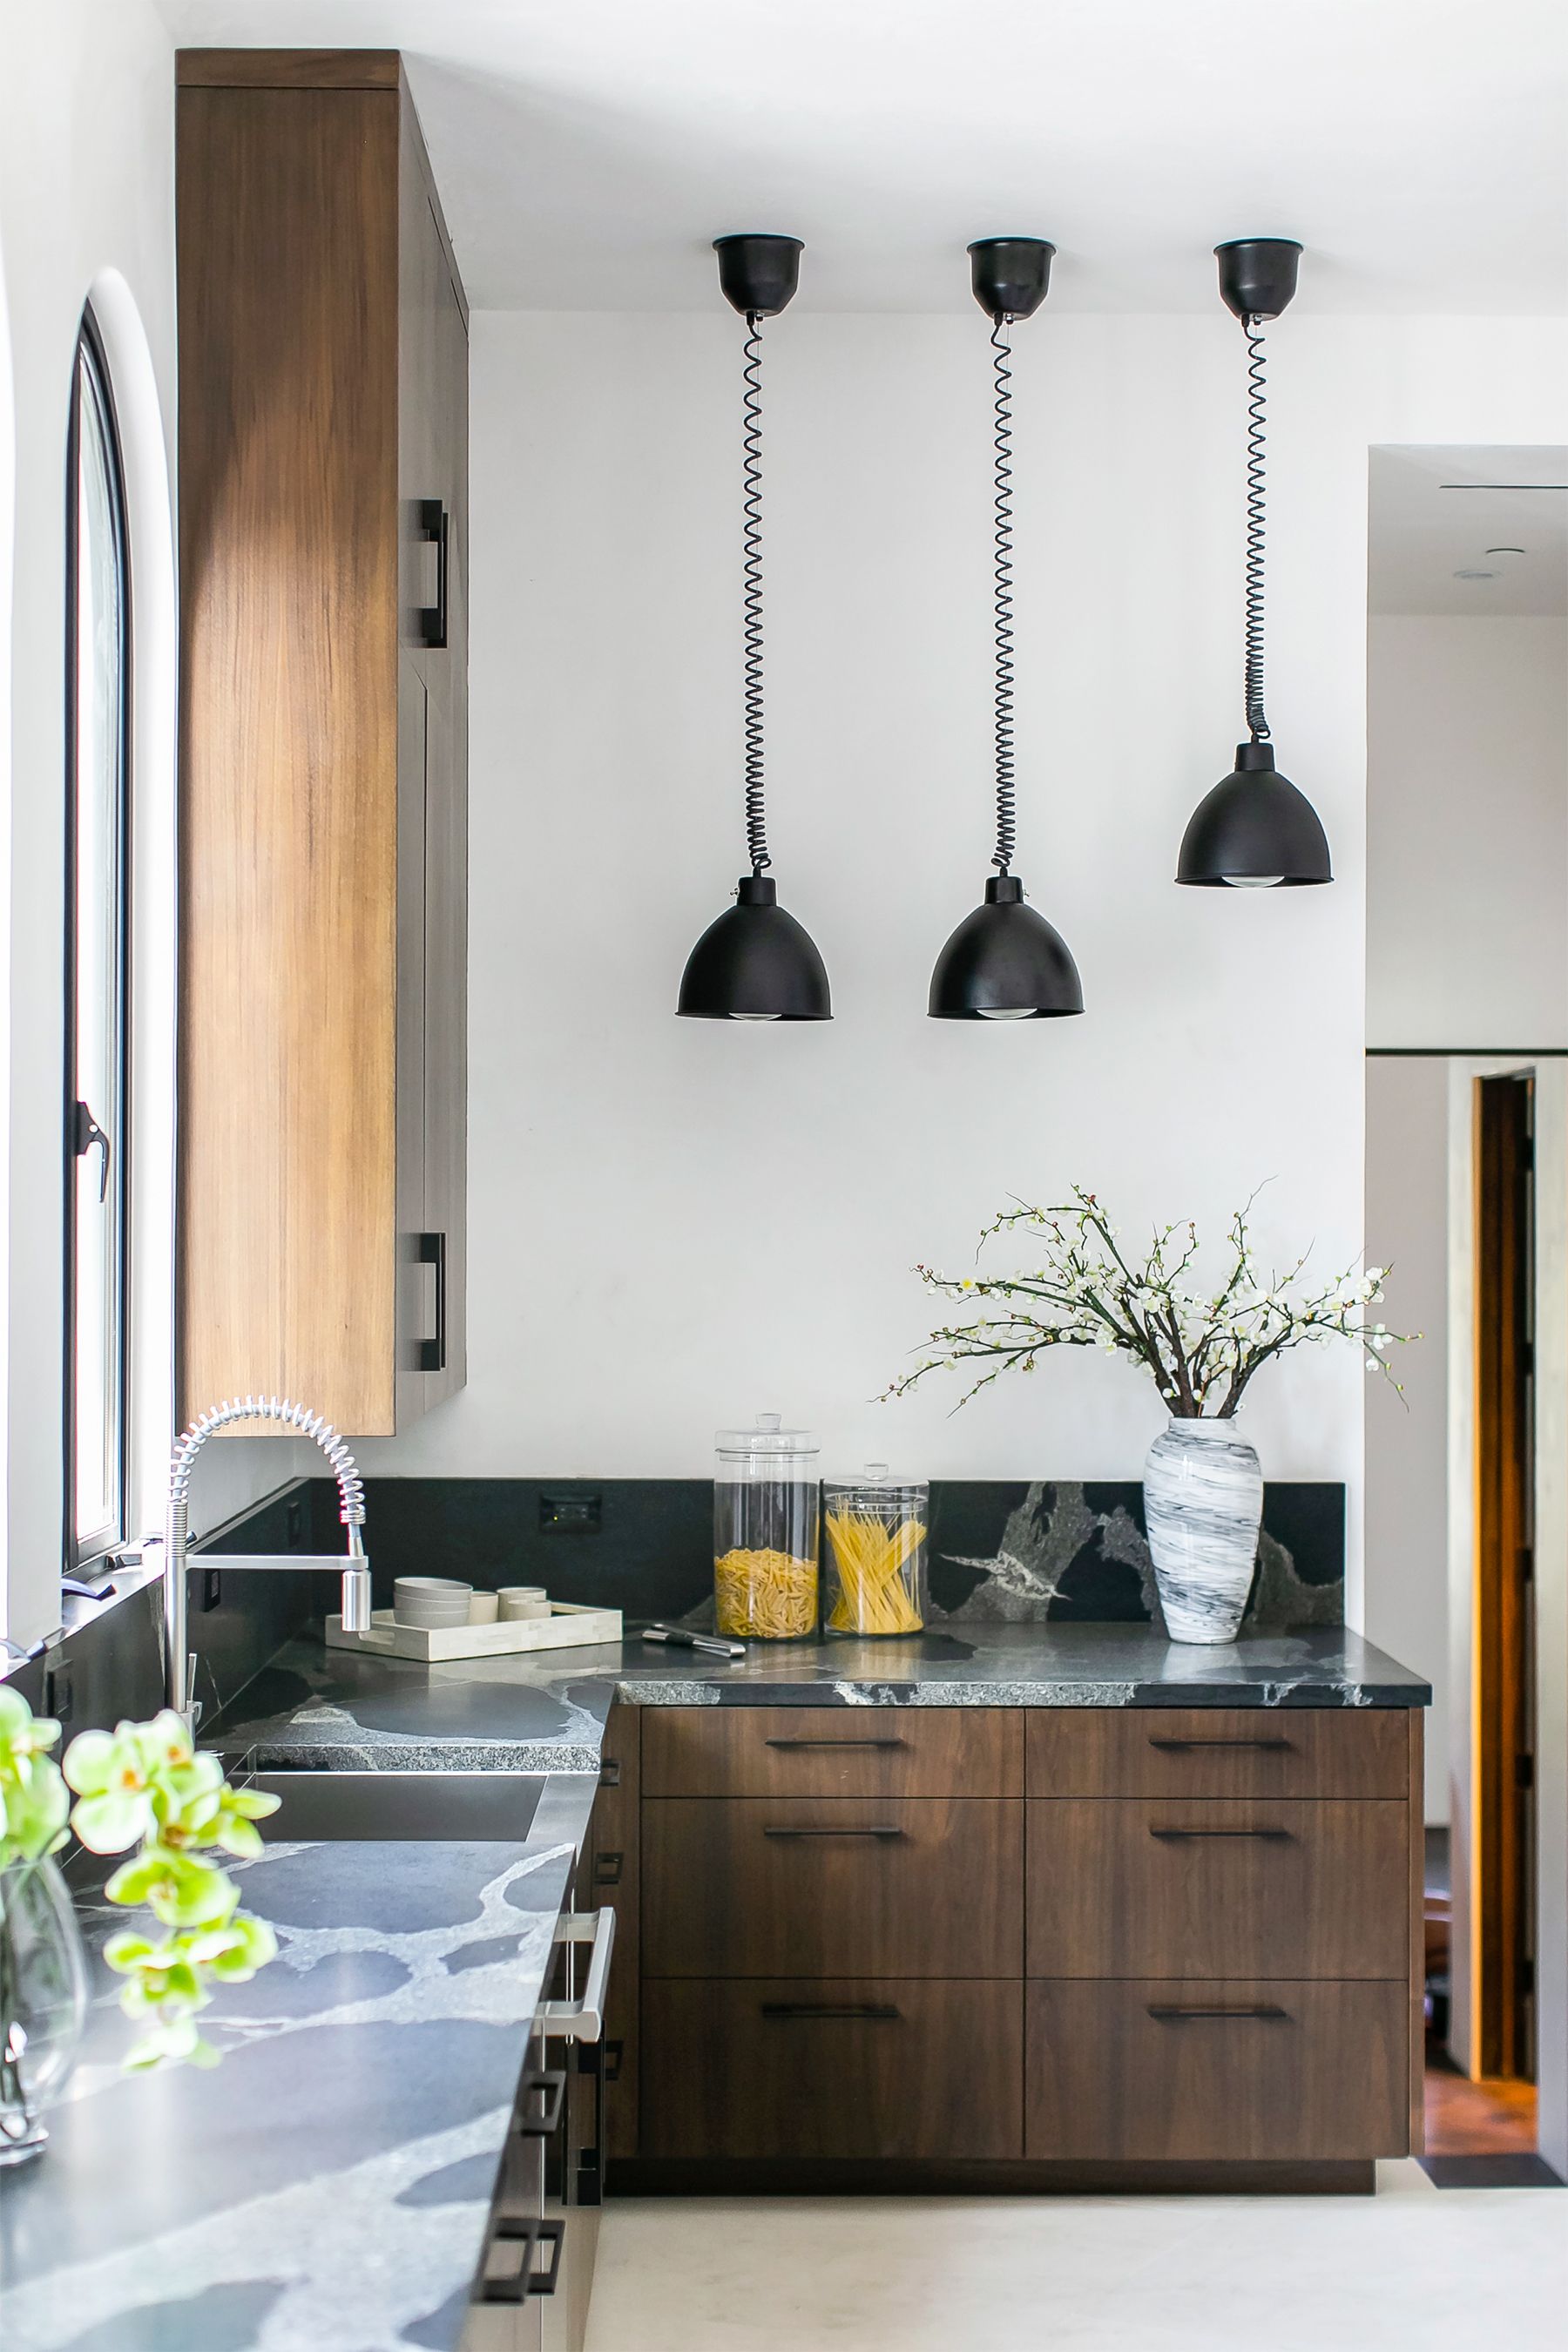 61 Kitchen Cabinet Design Ideas 2021 Unique Kitchen Cabinet Styles